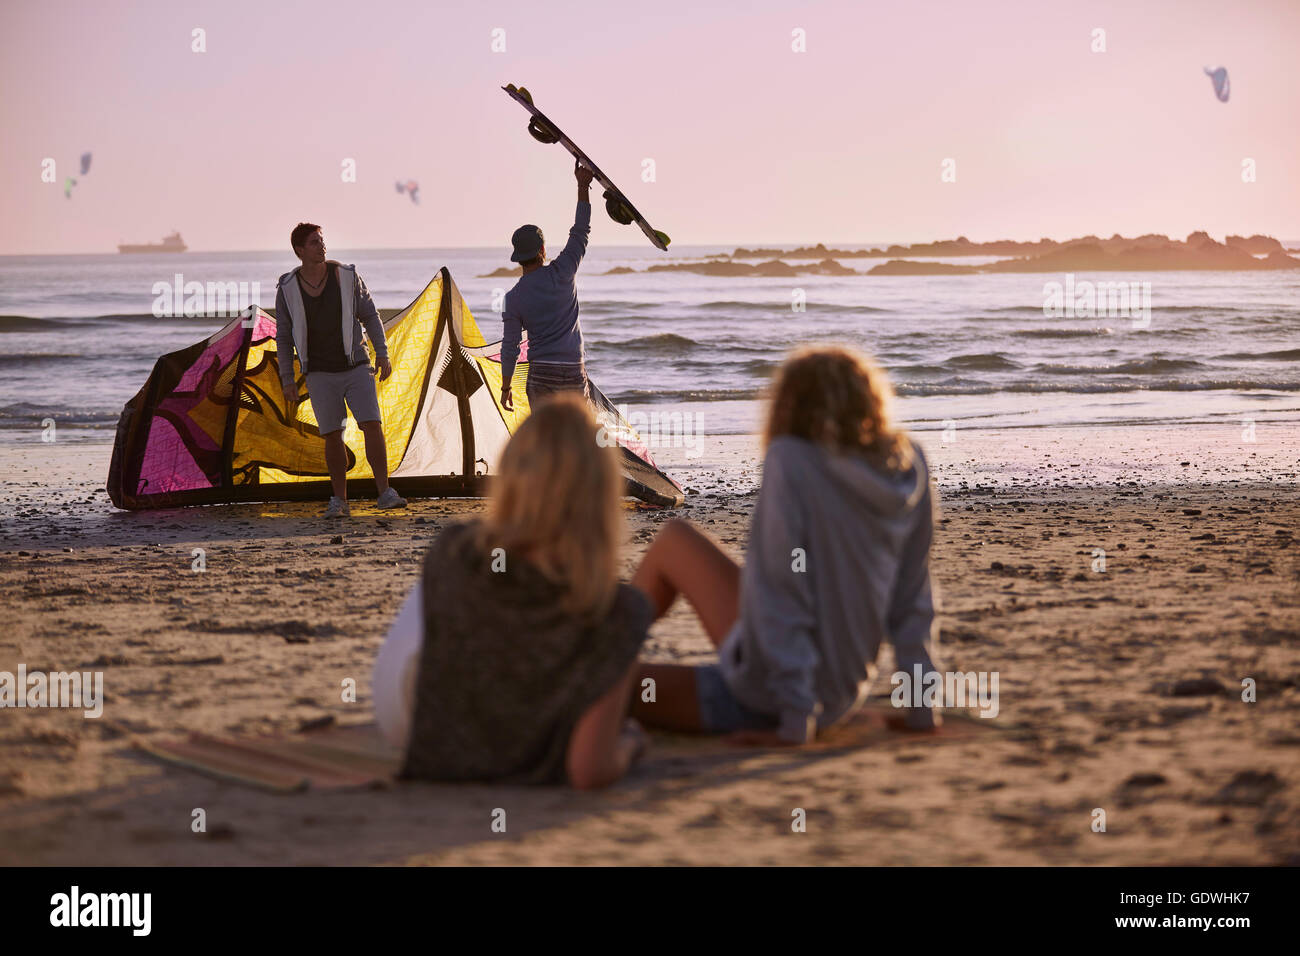 Women watching men preparing to kiteboard on beach Stock Photo